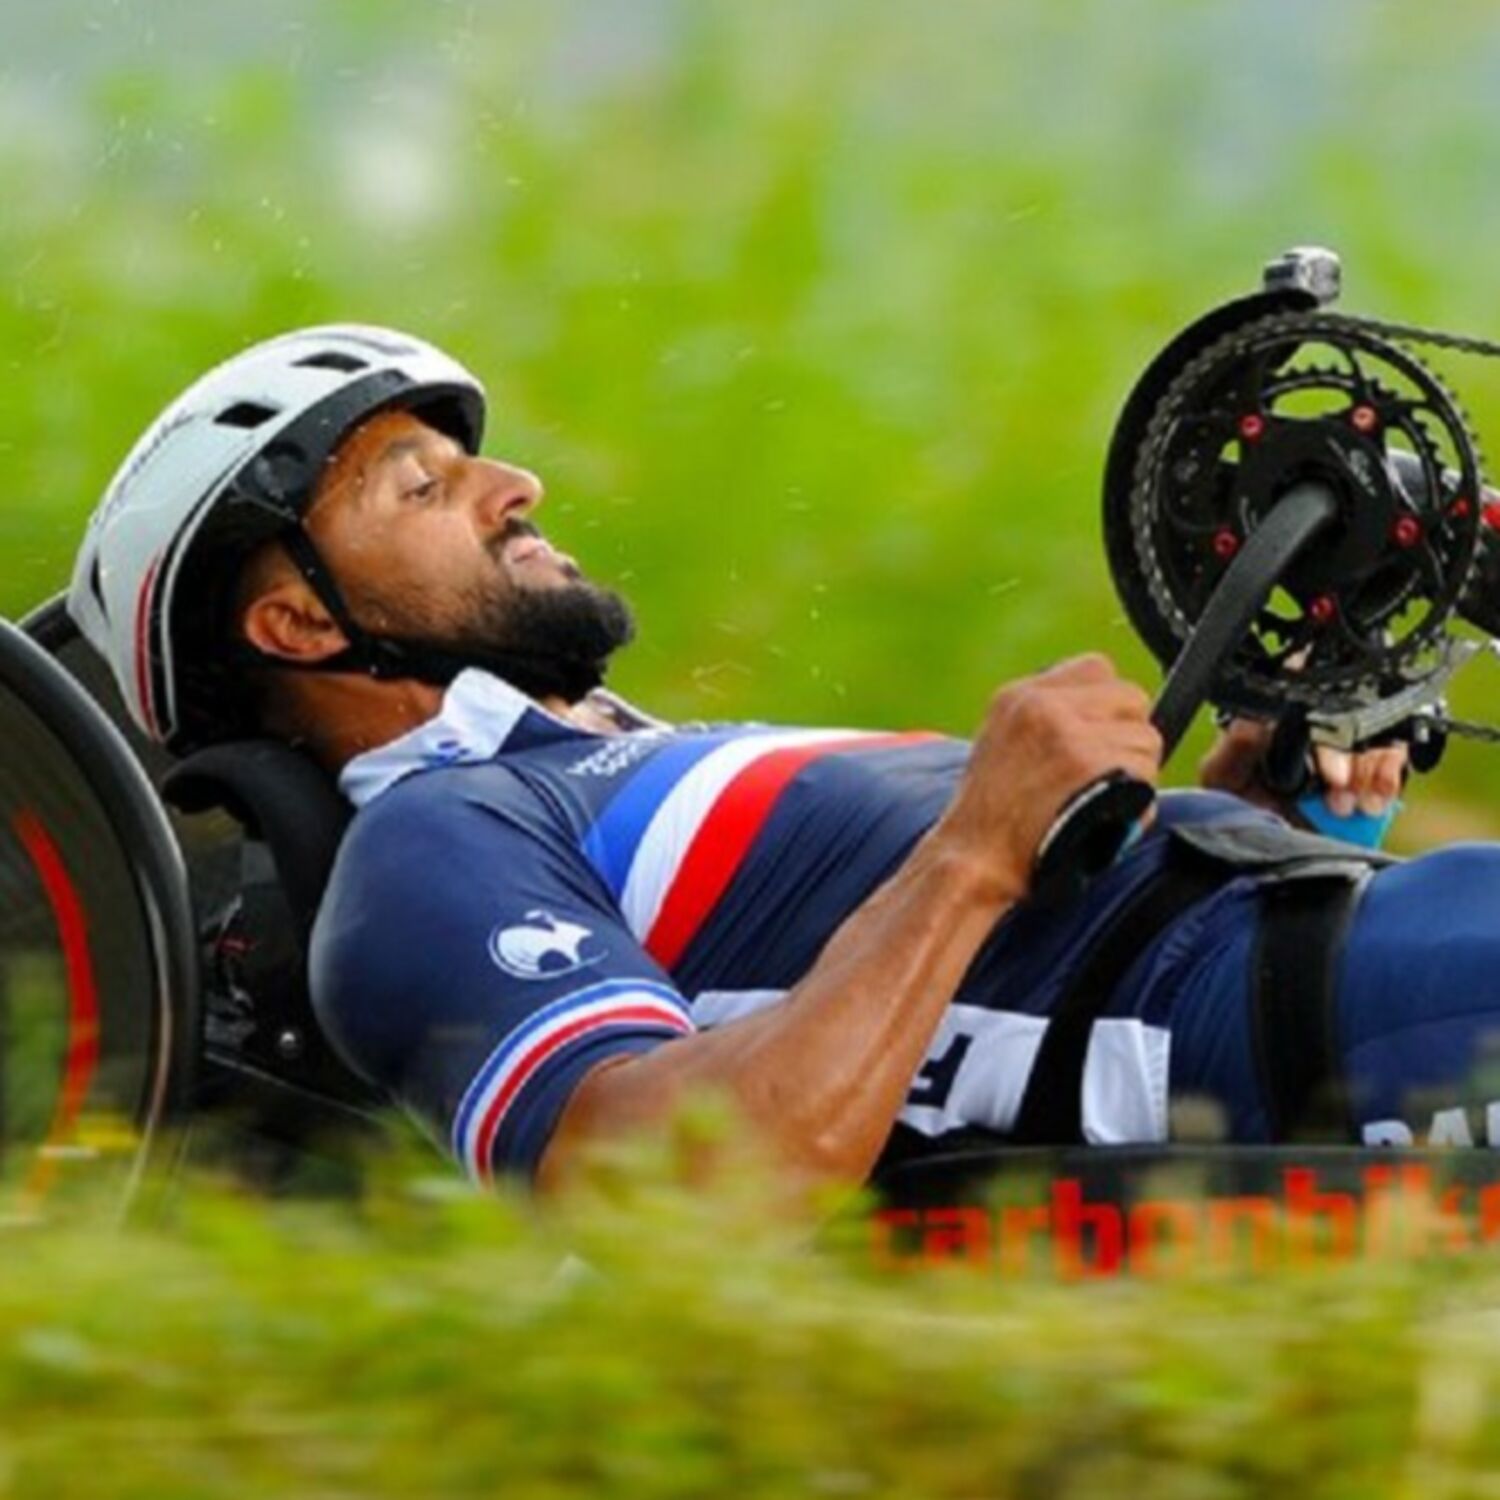 Ploërmel accueille les championnats de France de Paracyclisme ce week-end !